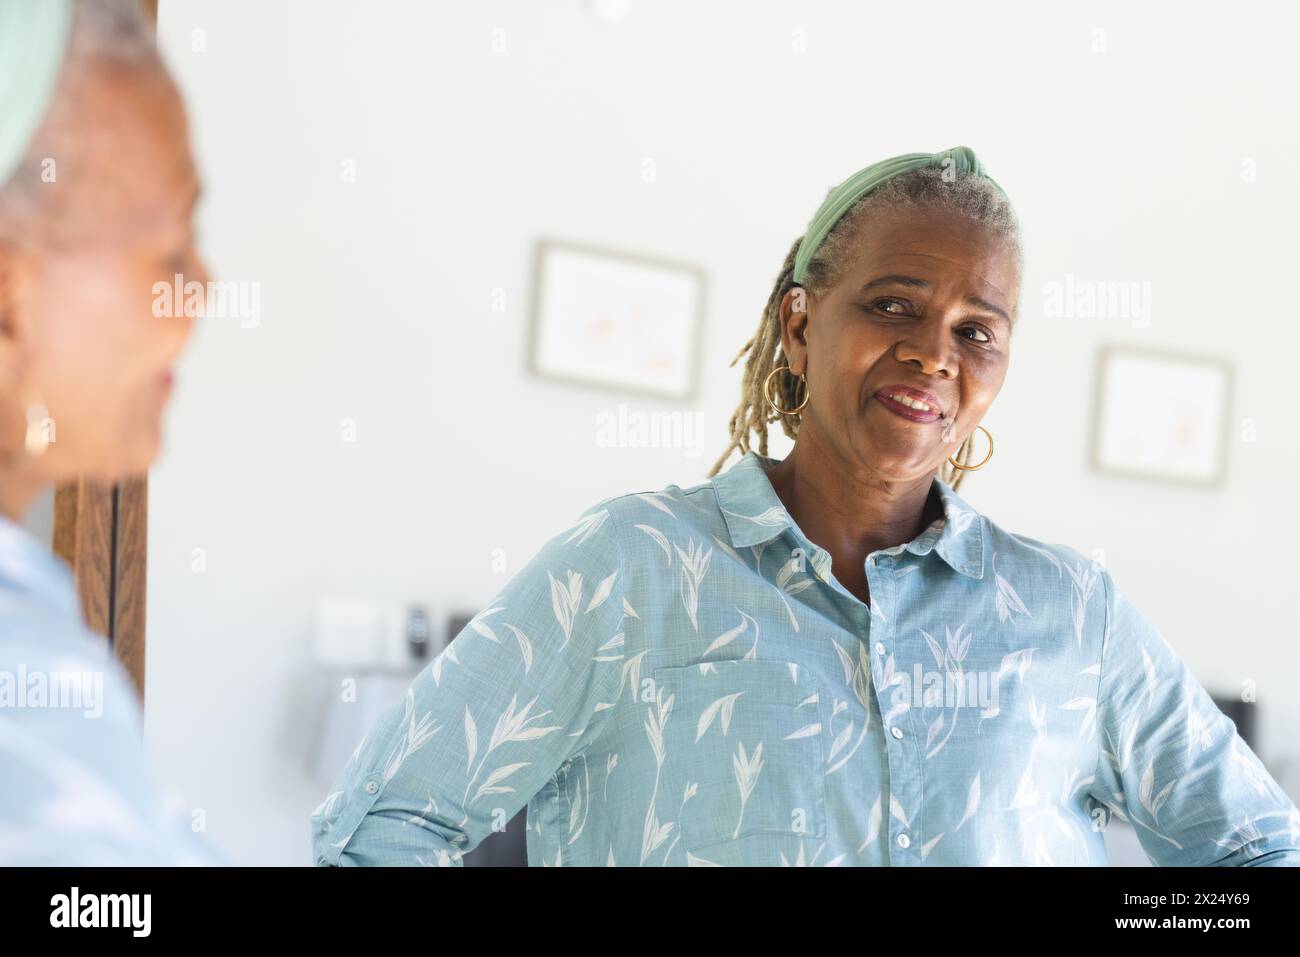 Une femme afro-américaine âgée avec les cheveux gris regardant dans le miroir à la maison. Vêtue d'une chemise bleu clair, elle affiche un sourire chaleureux, avec du fram en bois Banque D'Images